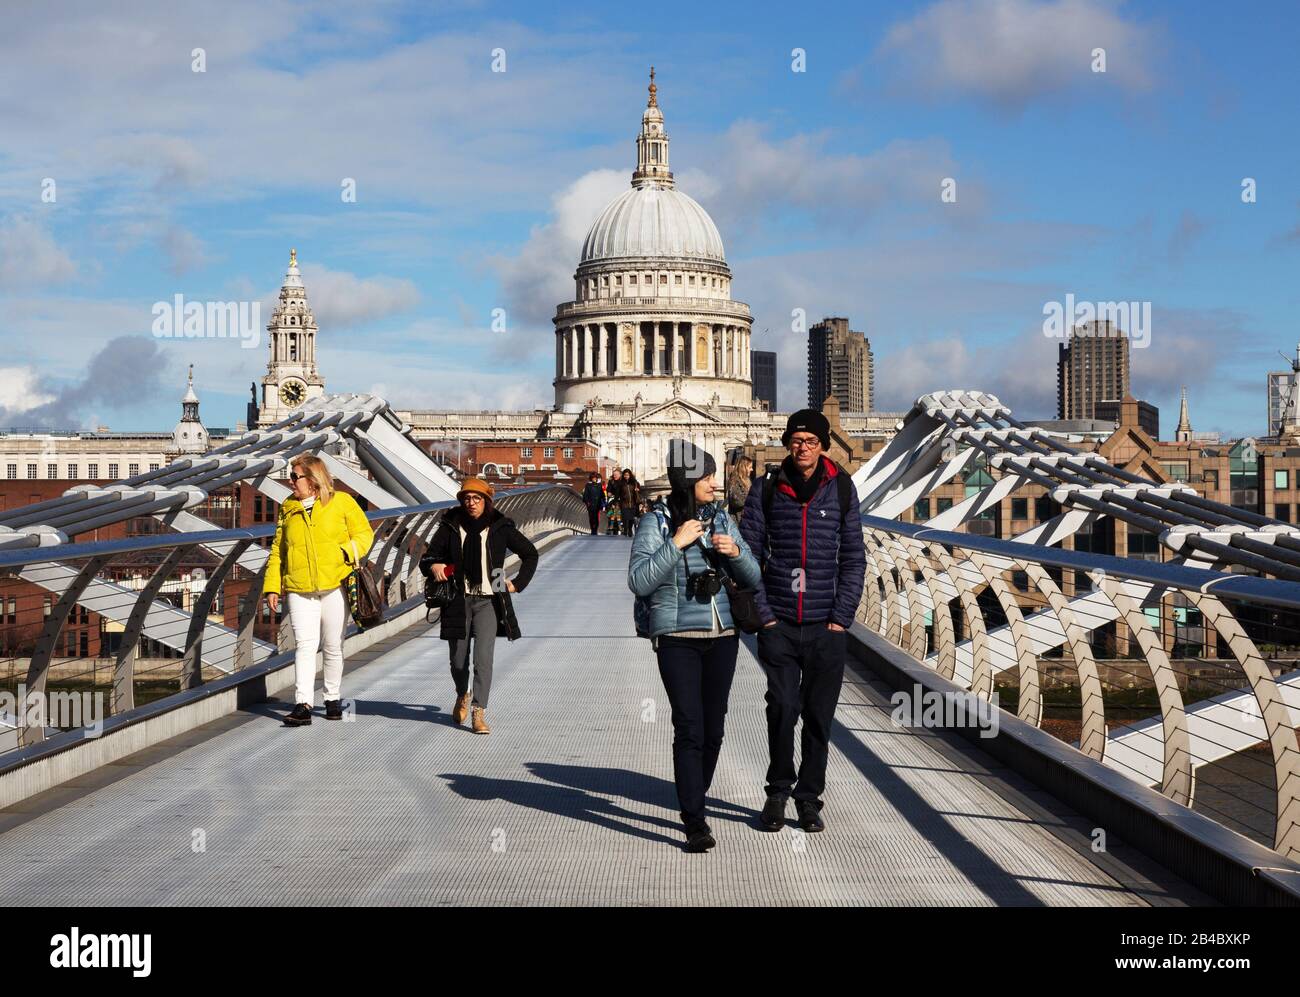 Les touristes londoniens traversant le pont du Millénaire en face de la cathédrale St Pauls lors d'une journée ensoleillée en mars, centre-ville de Londres, Londres Angleterre Royaume-Uni Banque D'Images